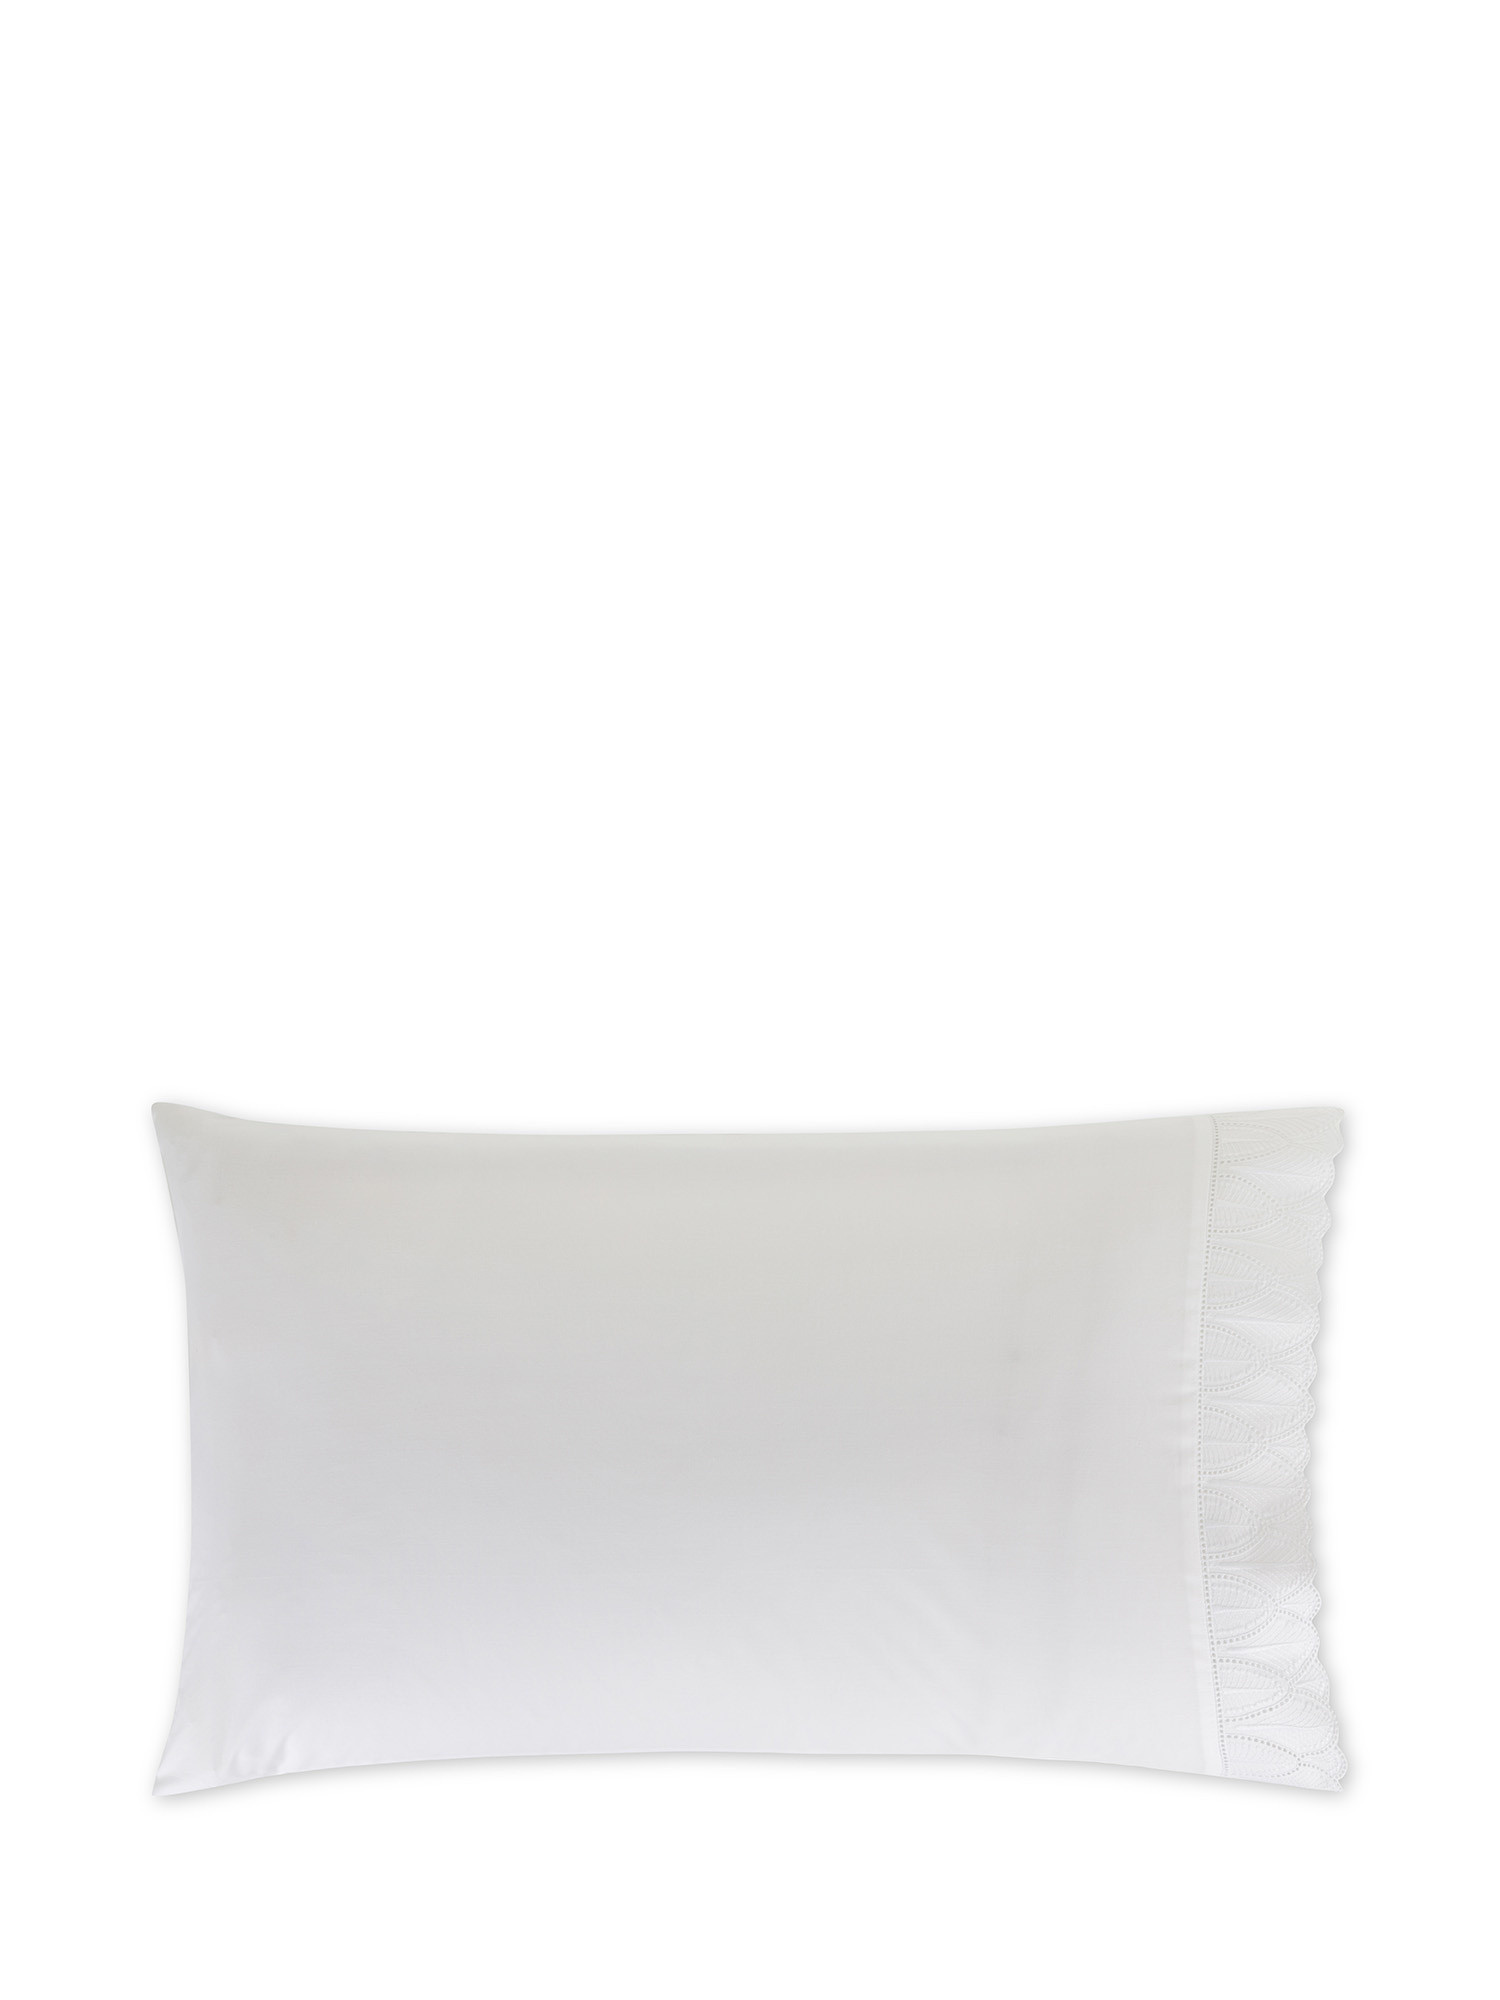 Pillowcase in fine cotton percale Portofino, White, large image number 0